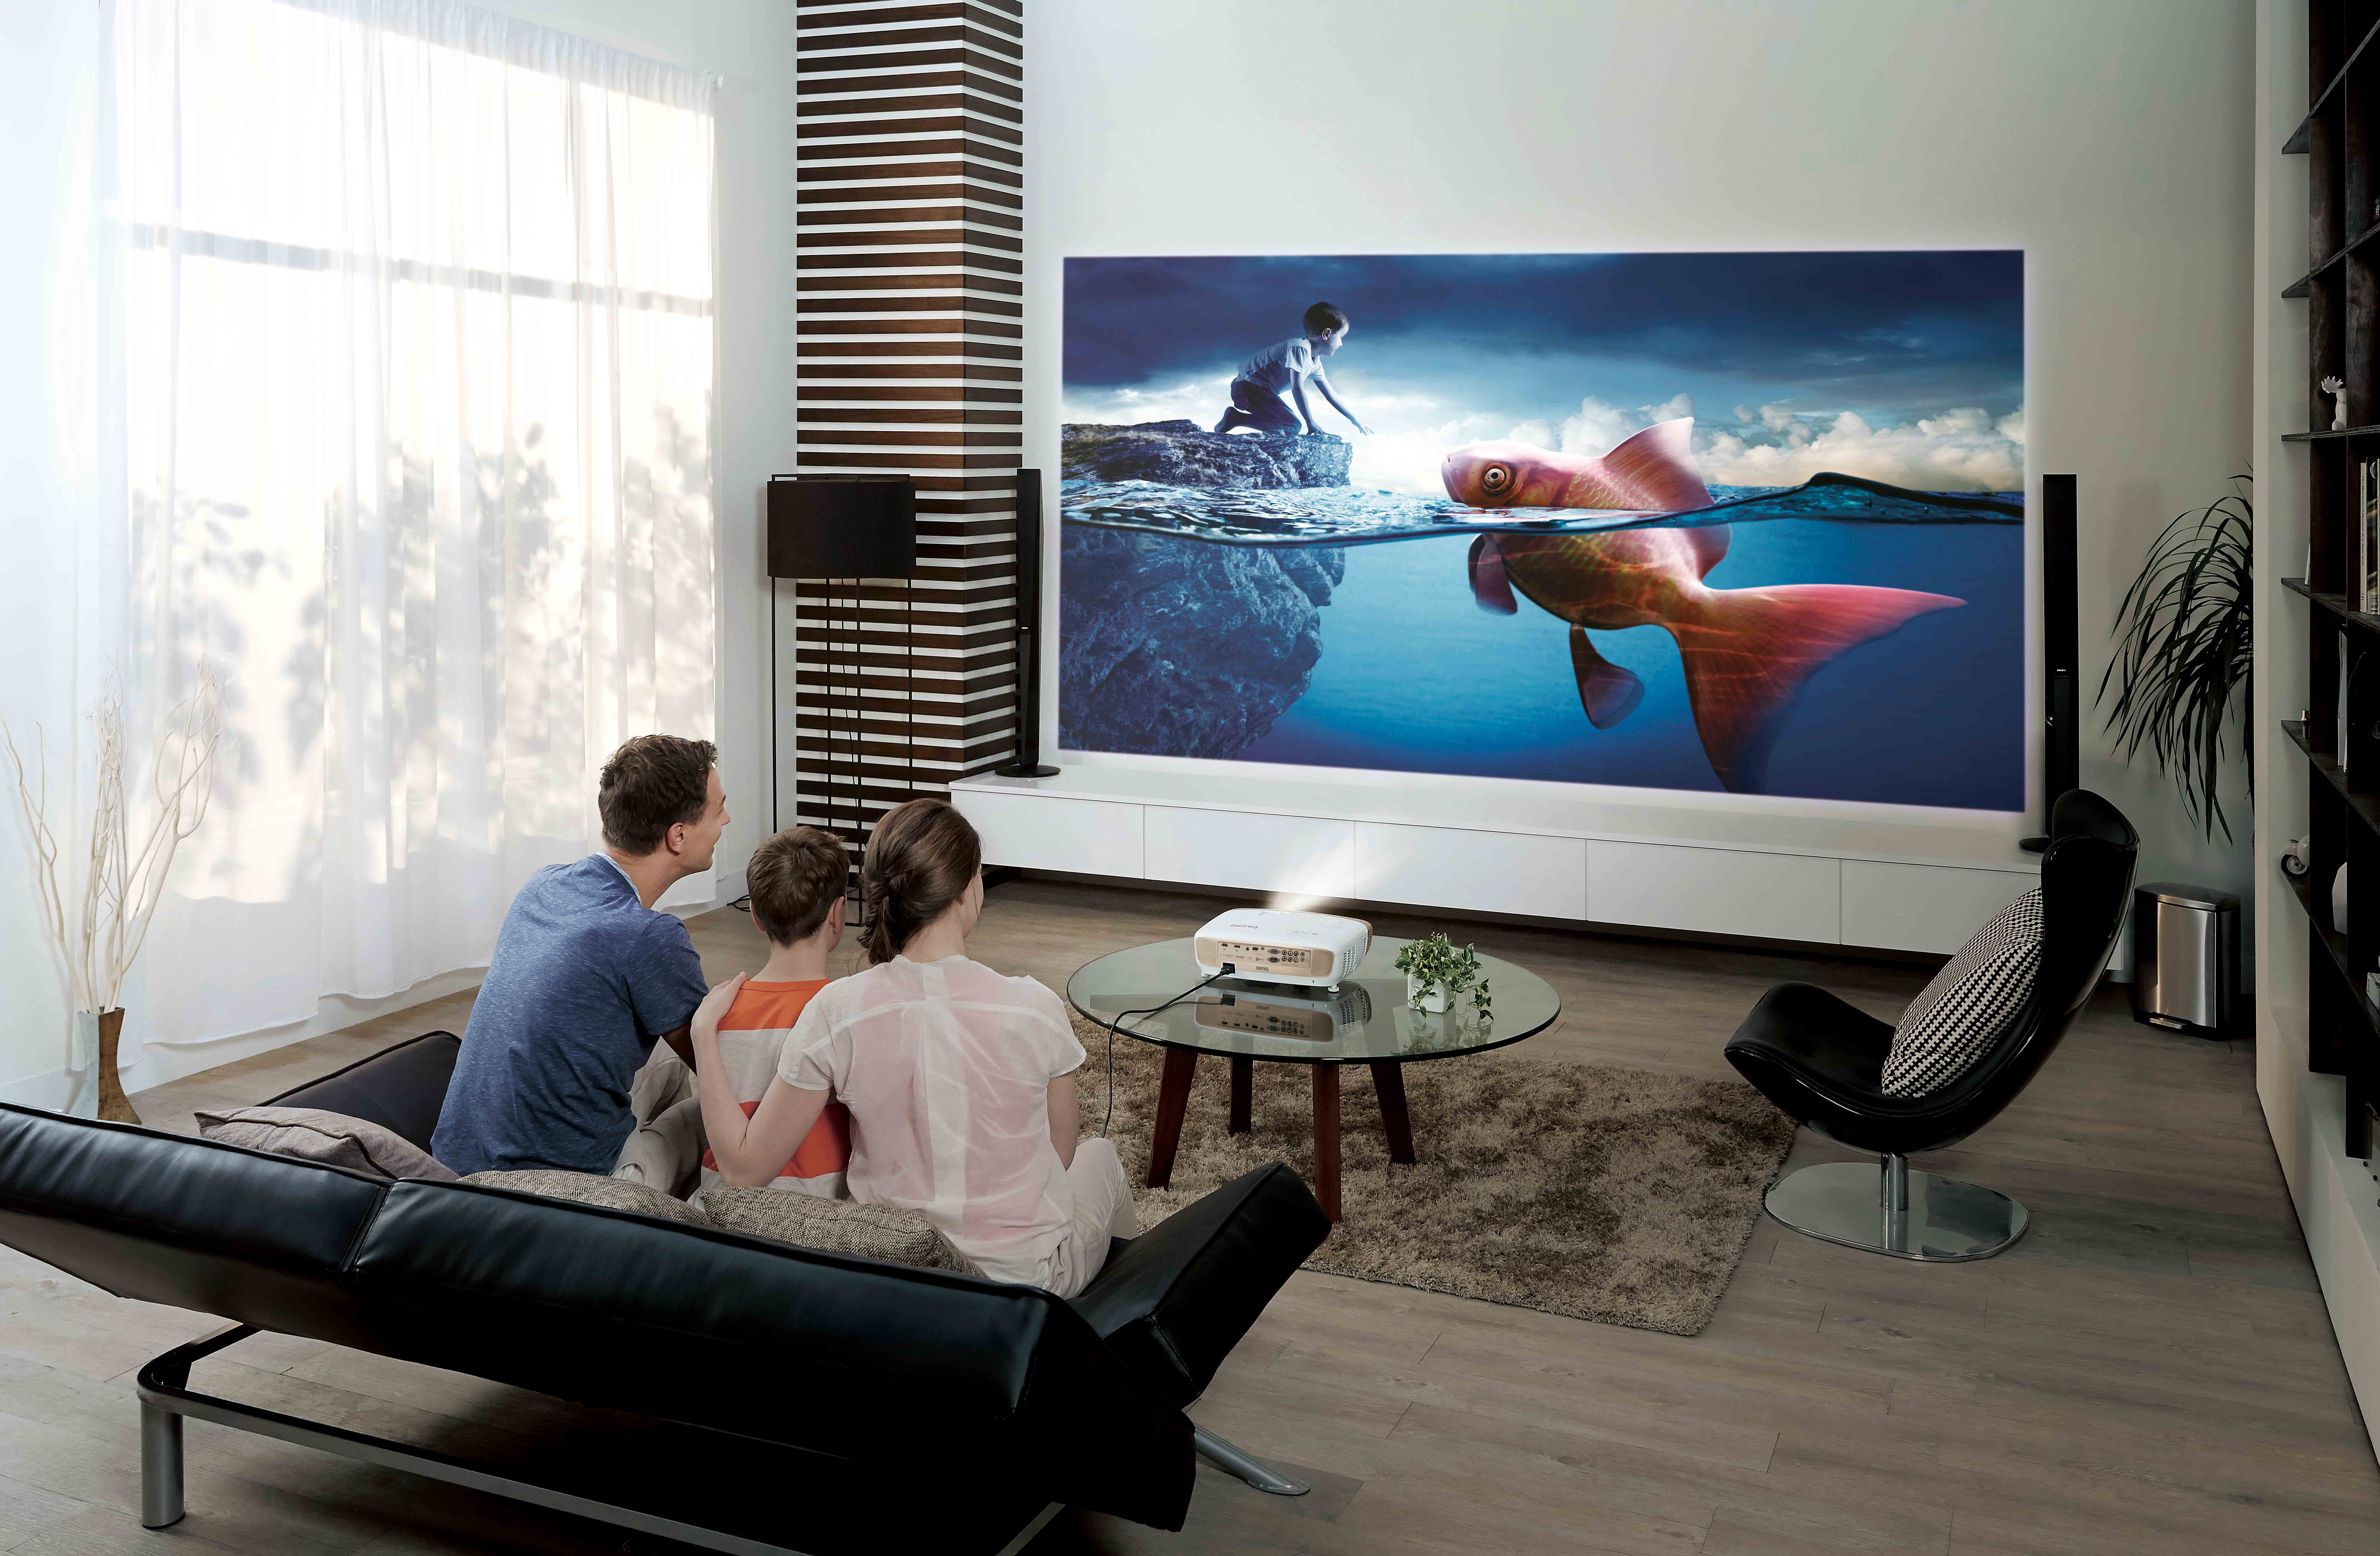 Хорошие телевизоры для компьютера. Samsung 100 дюймов. Проектор Vivitek d853w. Домашний кинотеатр с проектором и экраном.